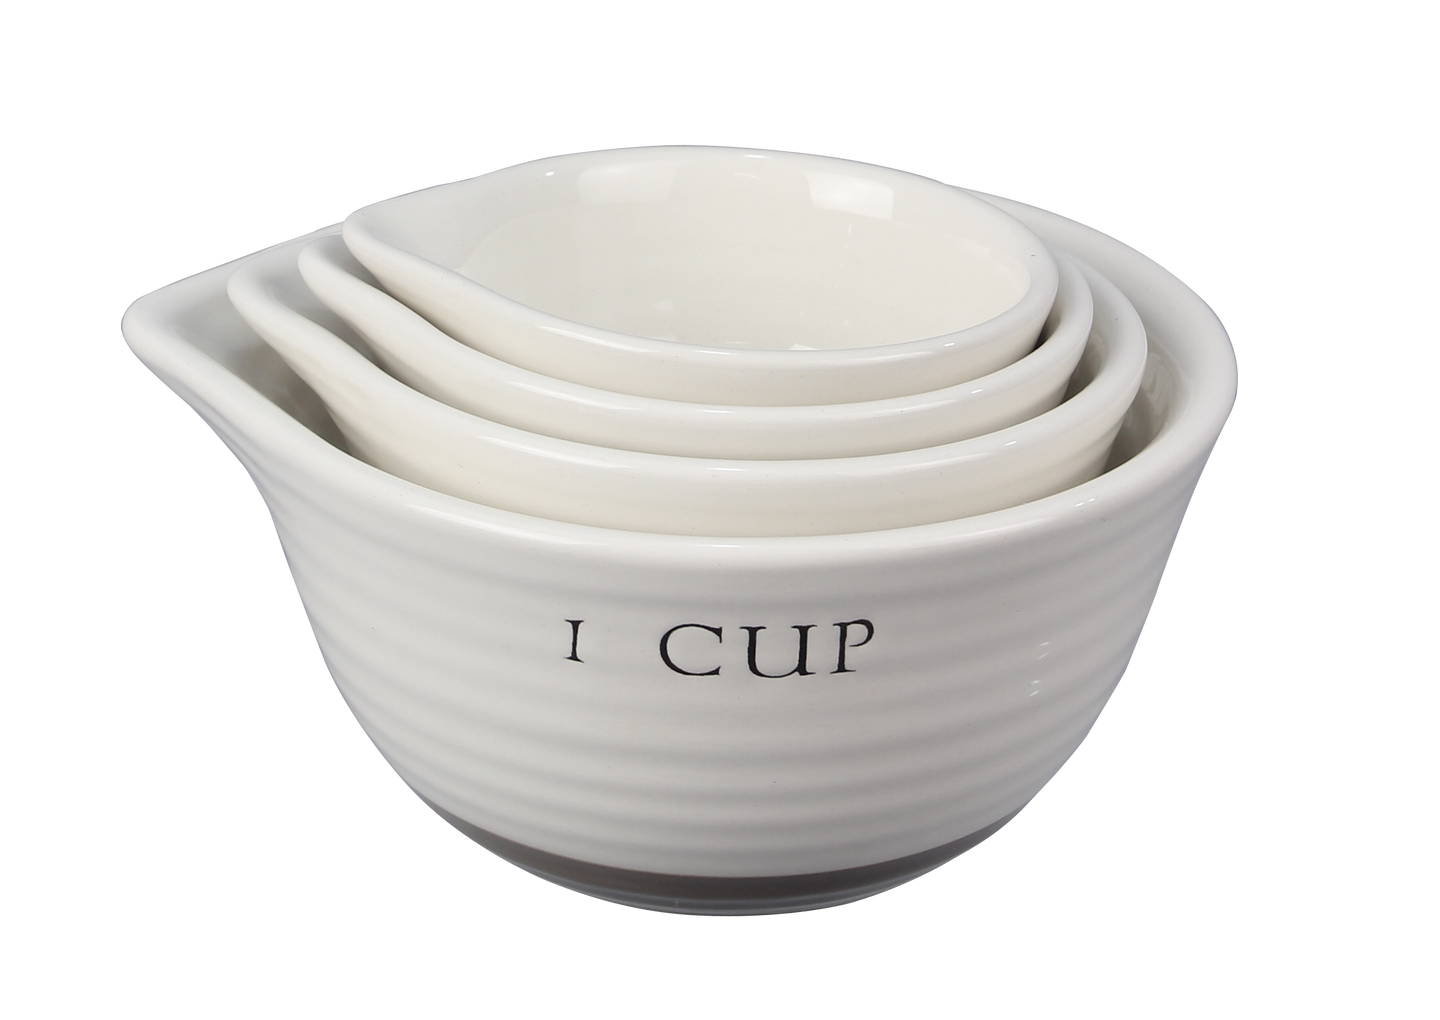 Ceramic Measuring Cups, 4 pc/s